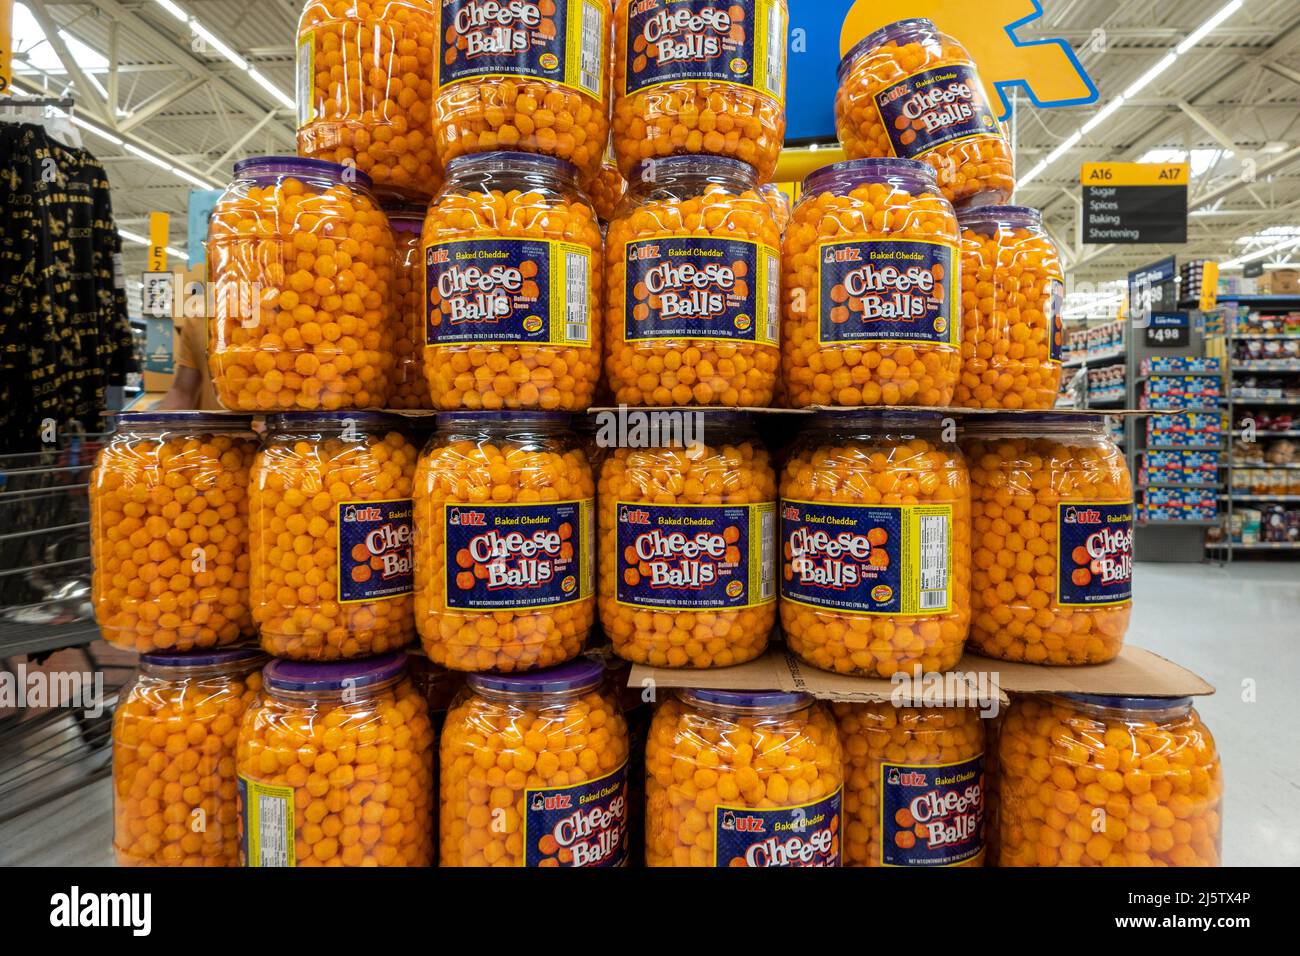 Grande pile de jarres, tonneaux avec boulettes de fromage cheddar cuites au four par Utz dans le supermarché américain. Banque D'Images